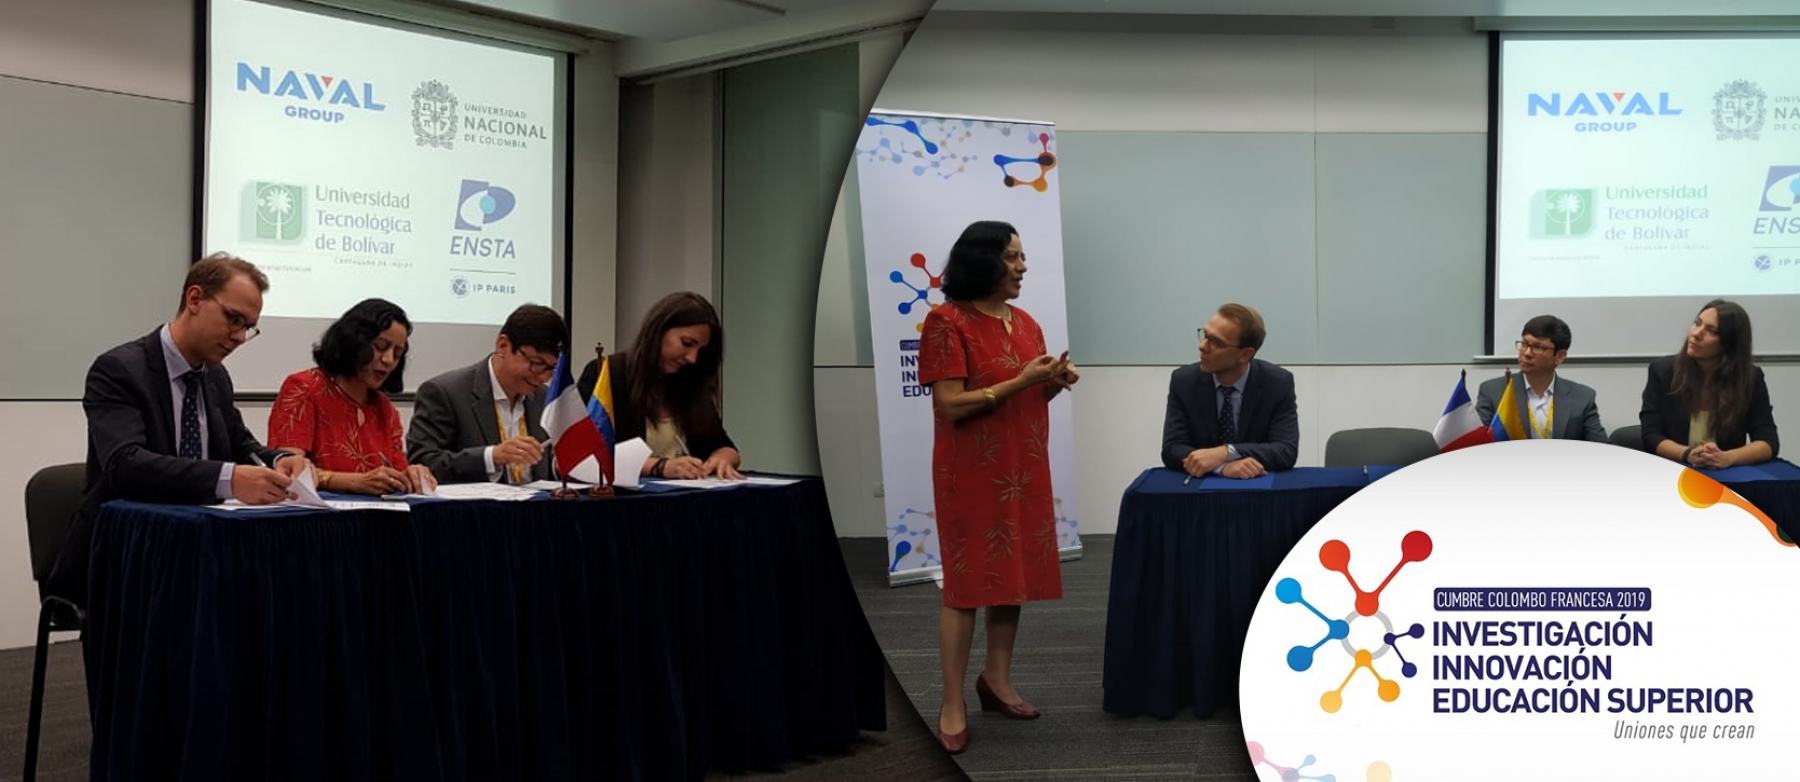 Se firma carta de intención que promueve colaboración entre ENSTA, Naval Group, la U.N. y la Universidad Tecnológica de Bolívar